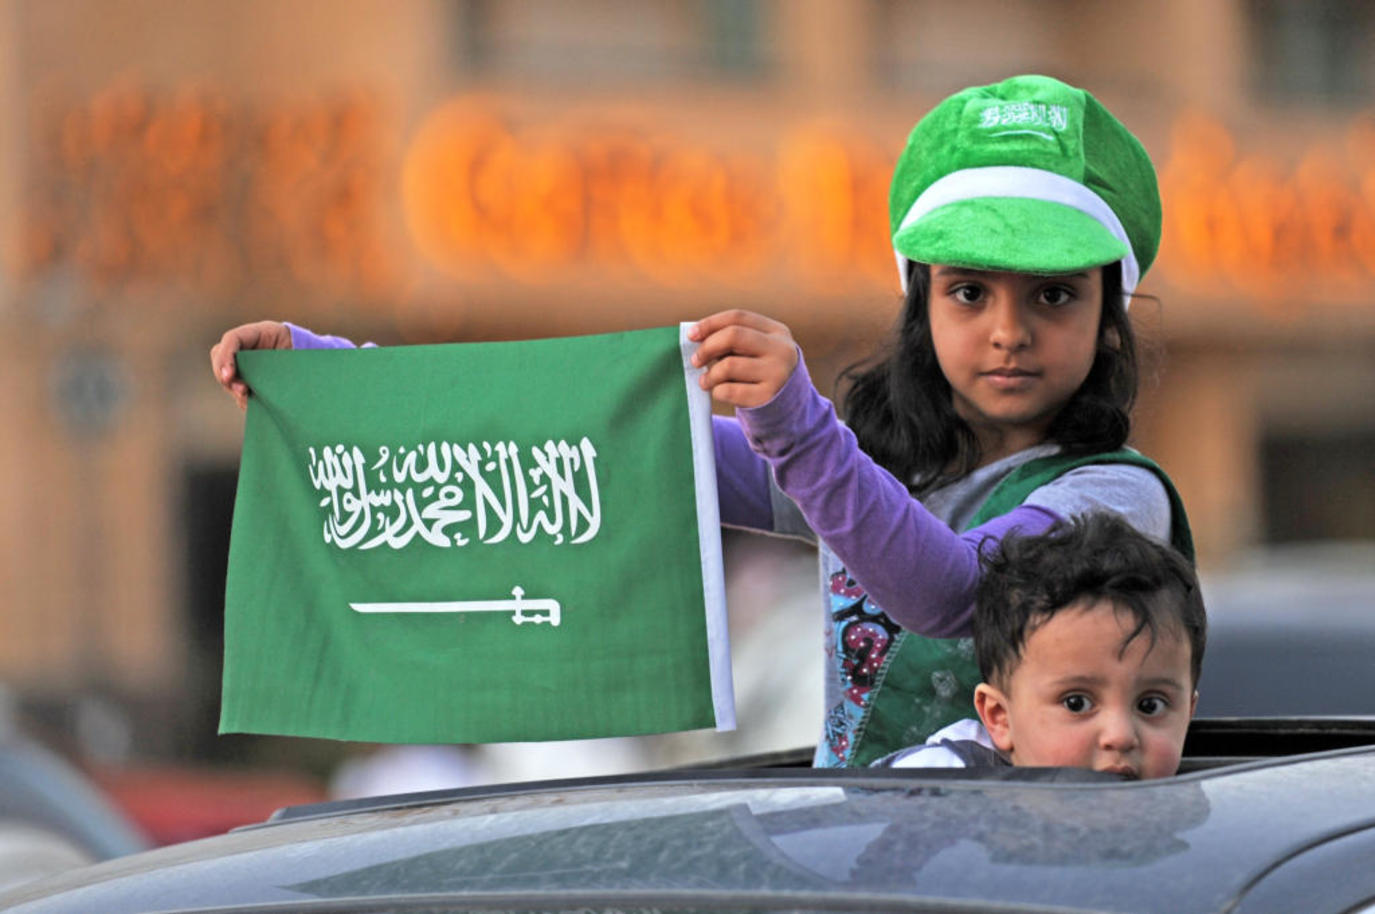 العيد الوطني السعودي من أم الأعياد بالمملكة